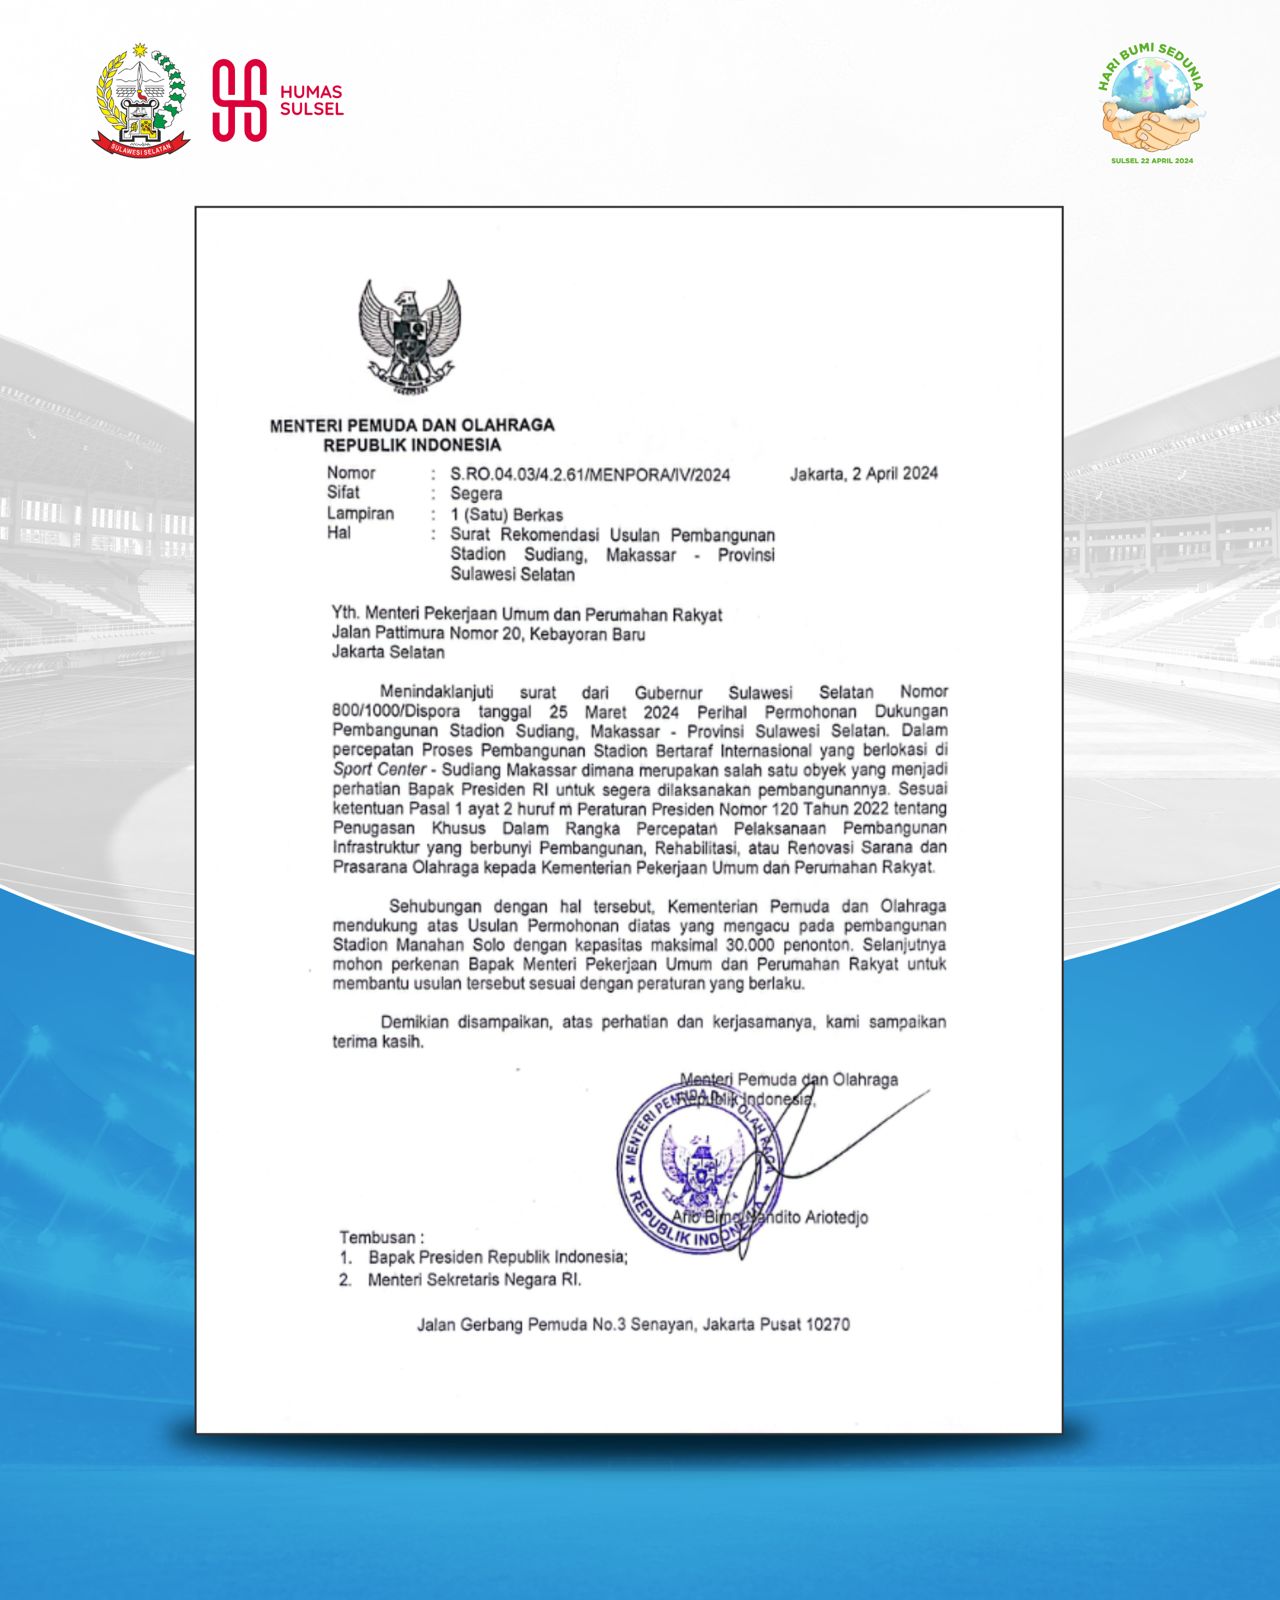 Sudiang Stadium, Kemenpora Rekomendasikan Seperti Stadion Manahan Solo